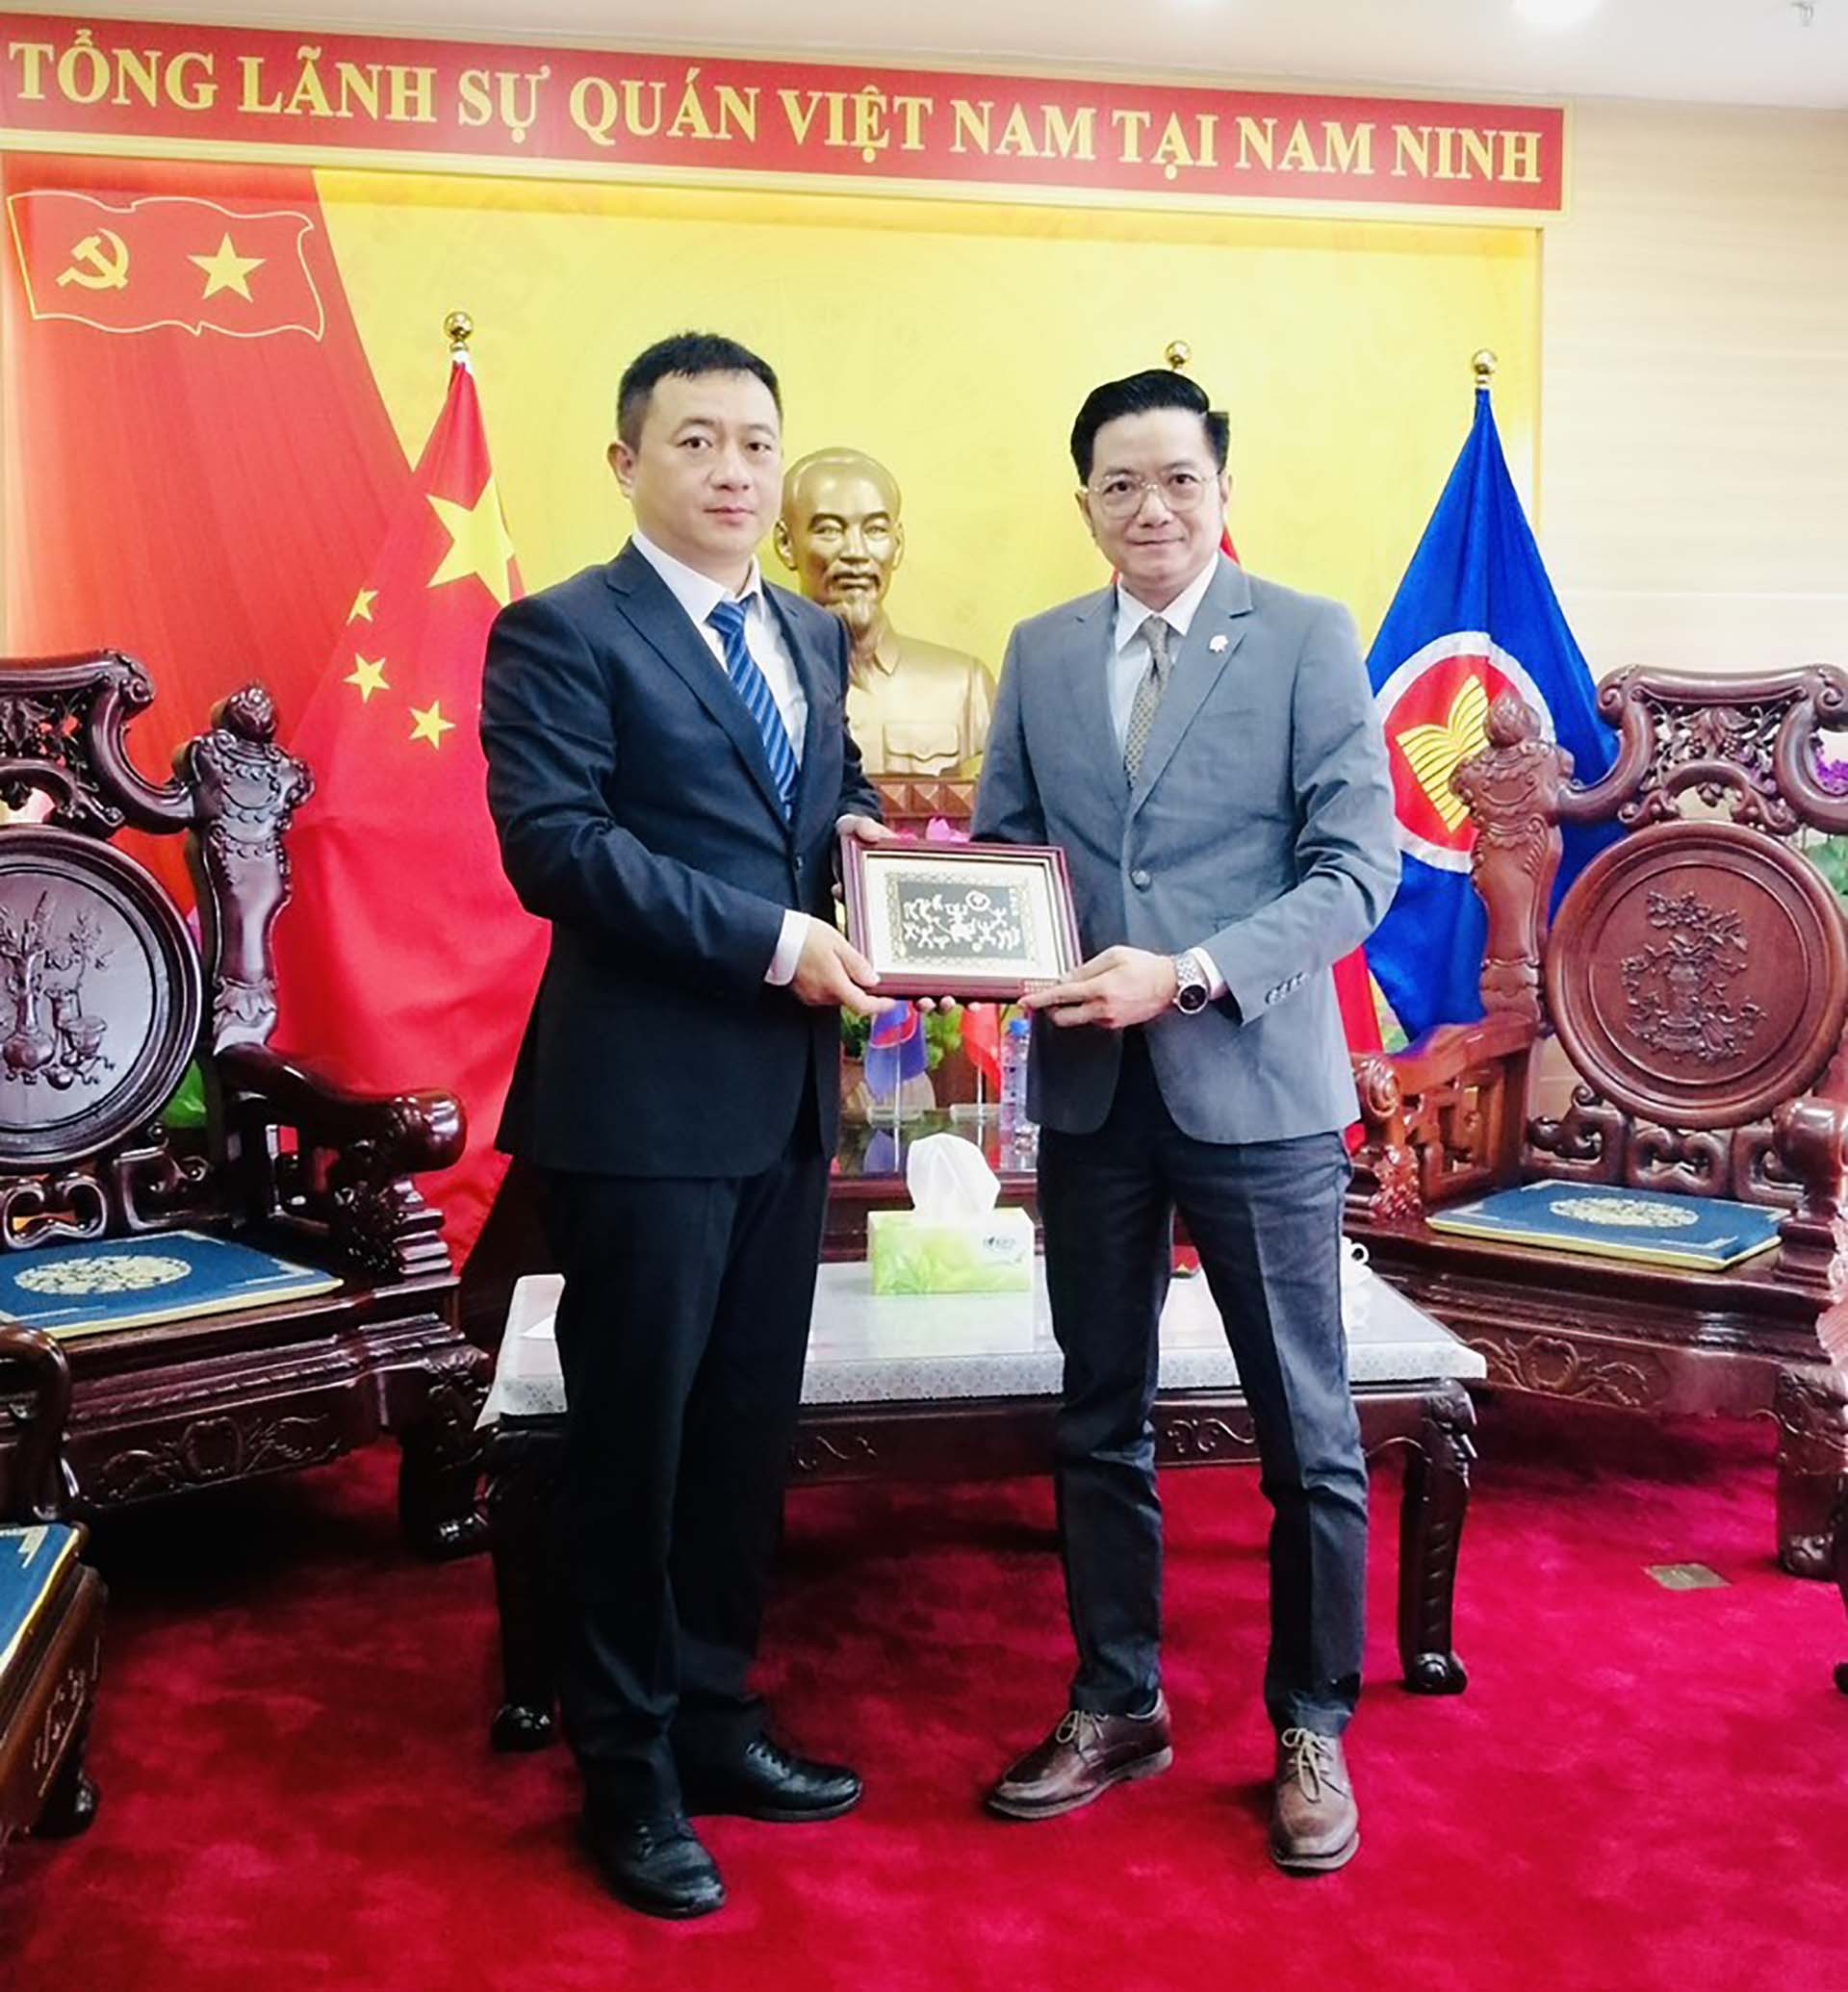 Tổng lãnh sự Việt Nam tại Nam Ninh Đỗ Nam Trung tiếp và làm việc với ông Chân Kiến Vĩ, Thường vụ Thành ủy, Phó Thị trưởng thành phố Sùng Tả, Quảng Tây.